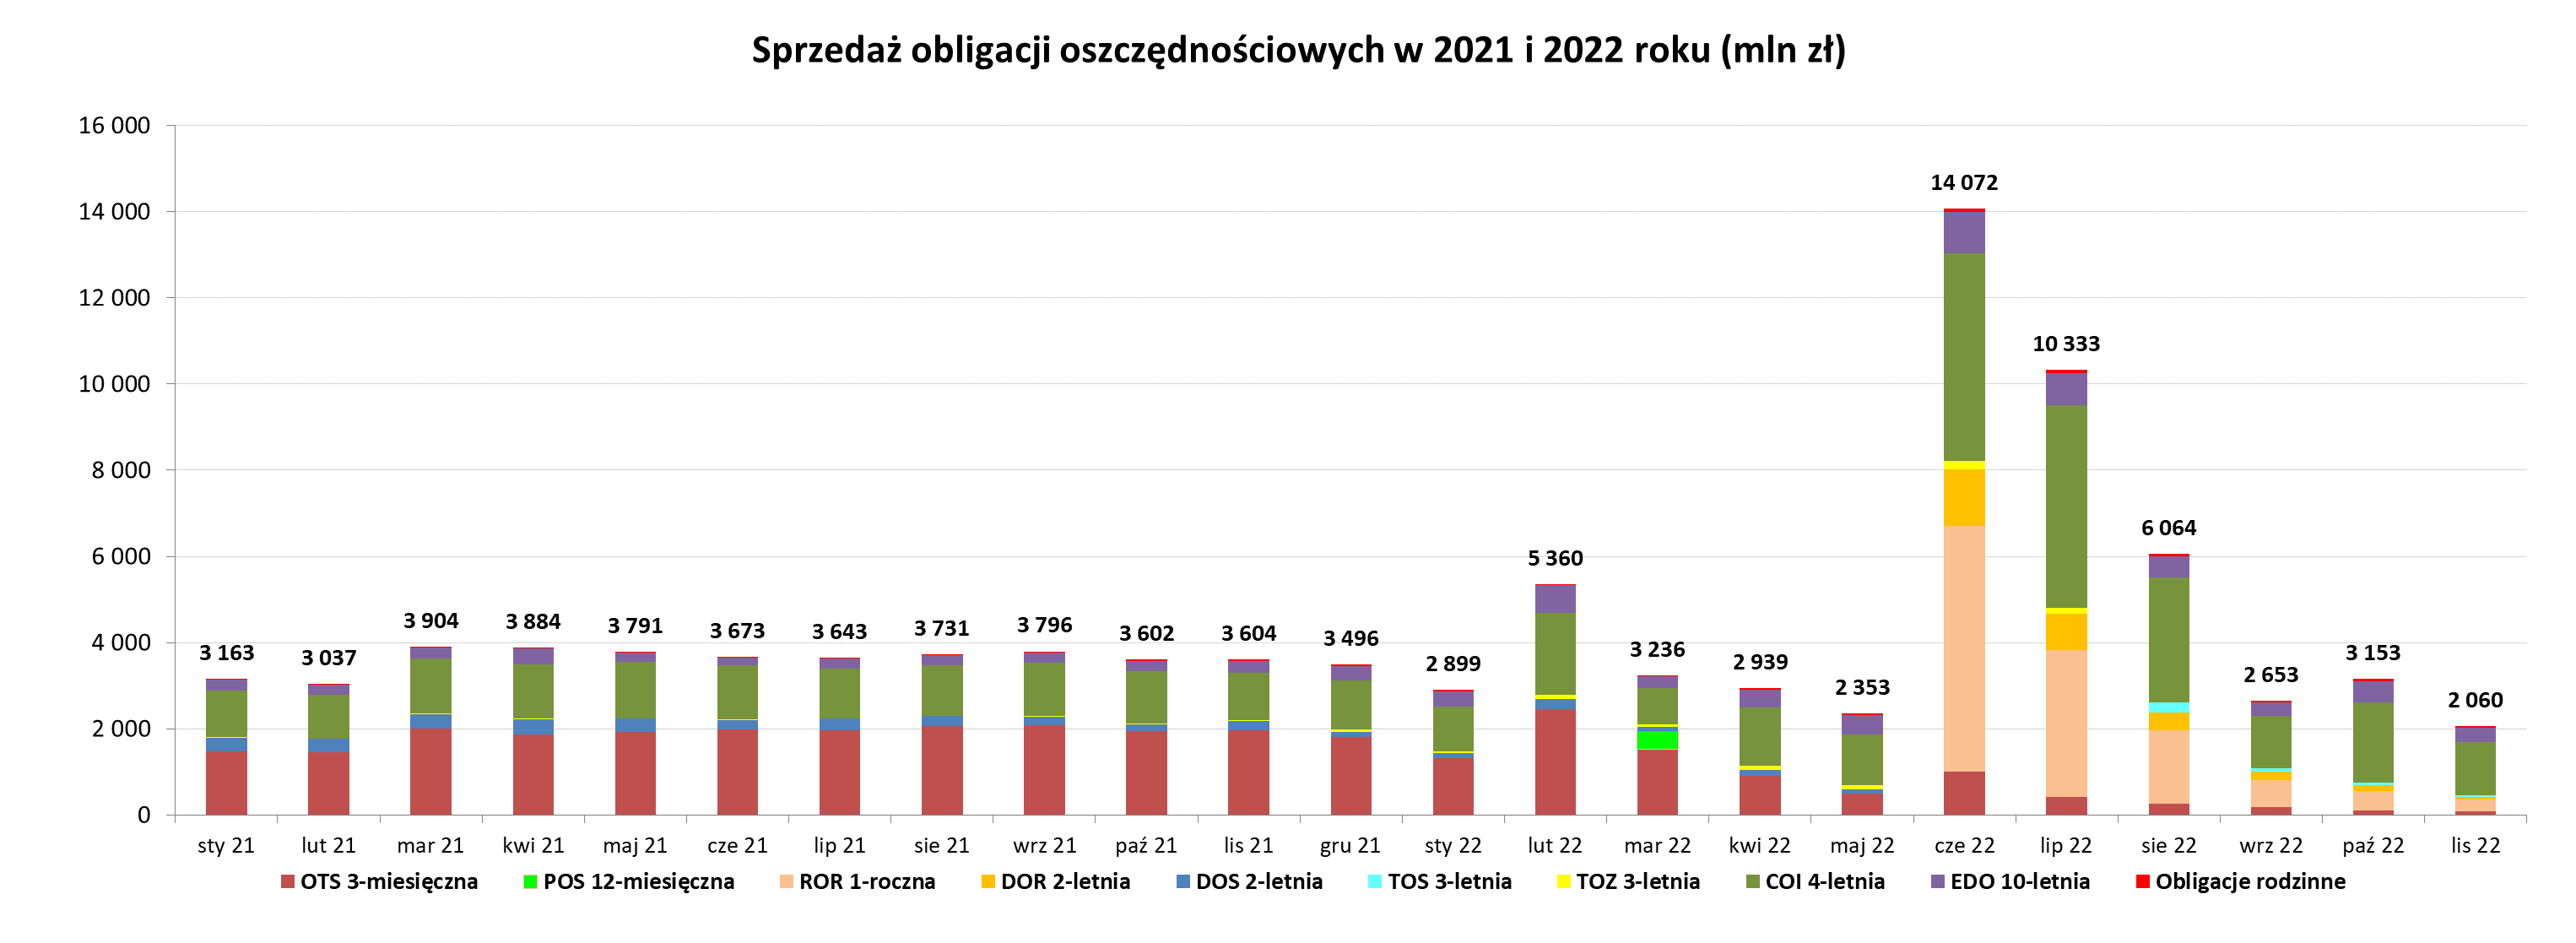 Wykres słupkowy przedstawiający sprzedaży obligacji oszczędnościowych w listopadzie 2022